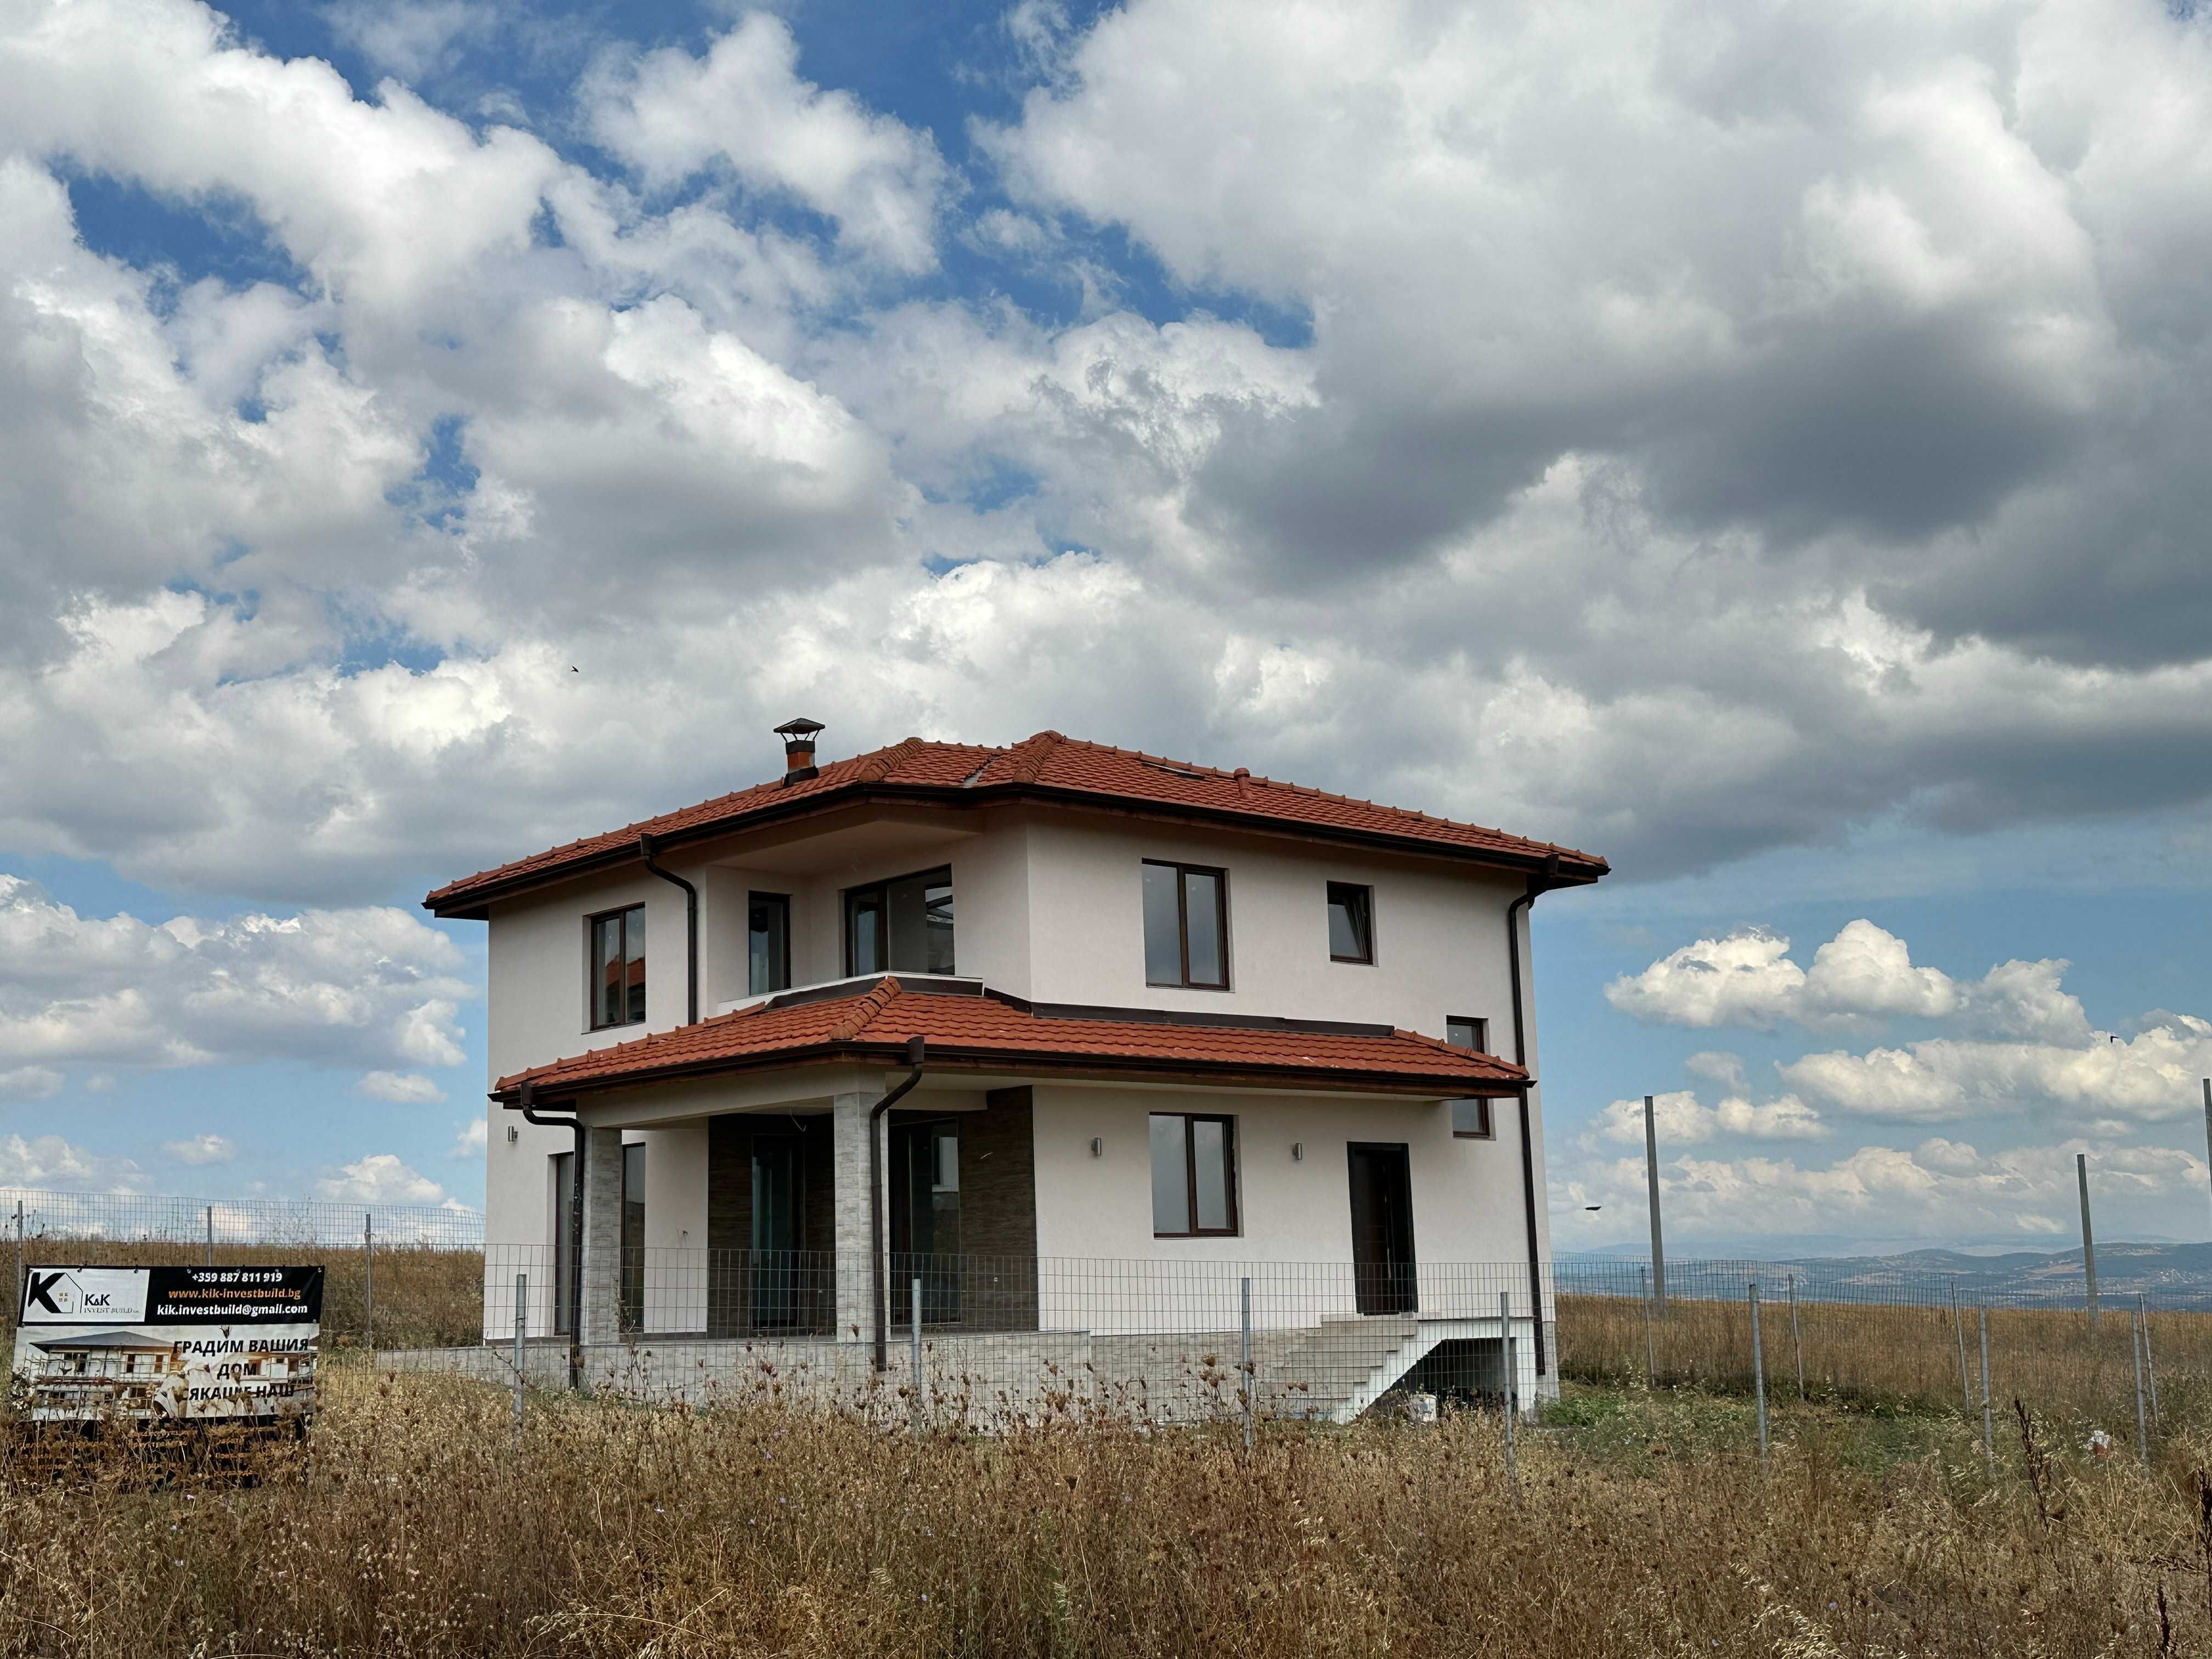 Еднофамилна Къща в с. Гурмазово - 15мин от София. 187 м2 с Двор 800 м2